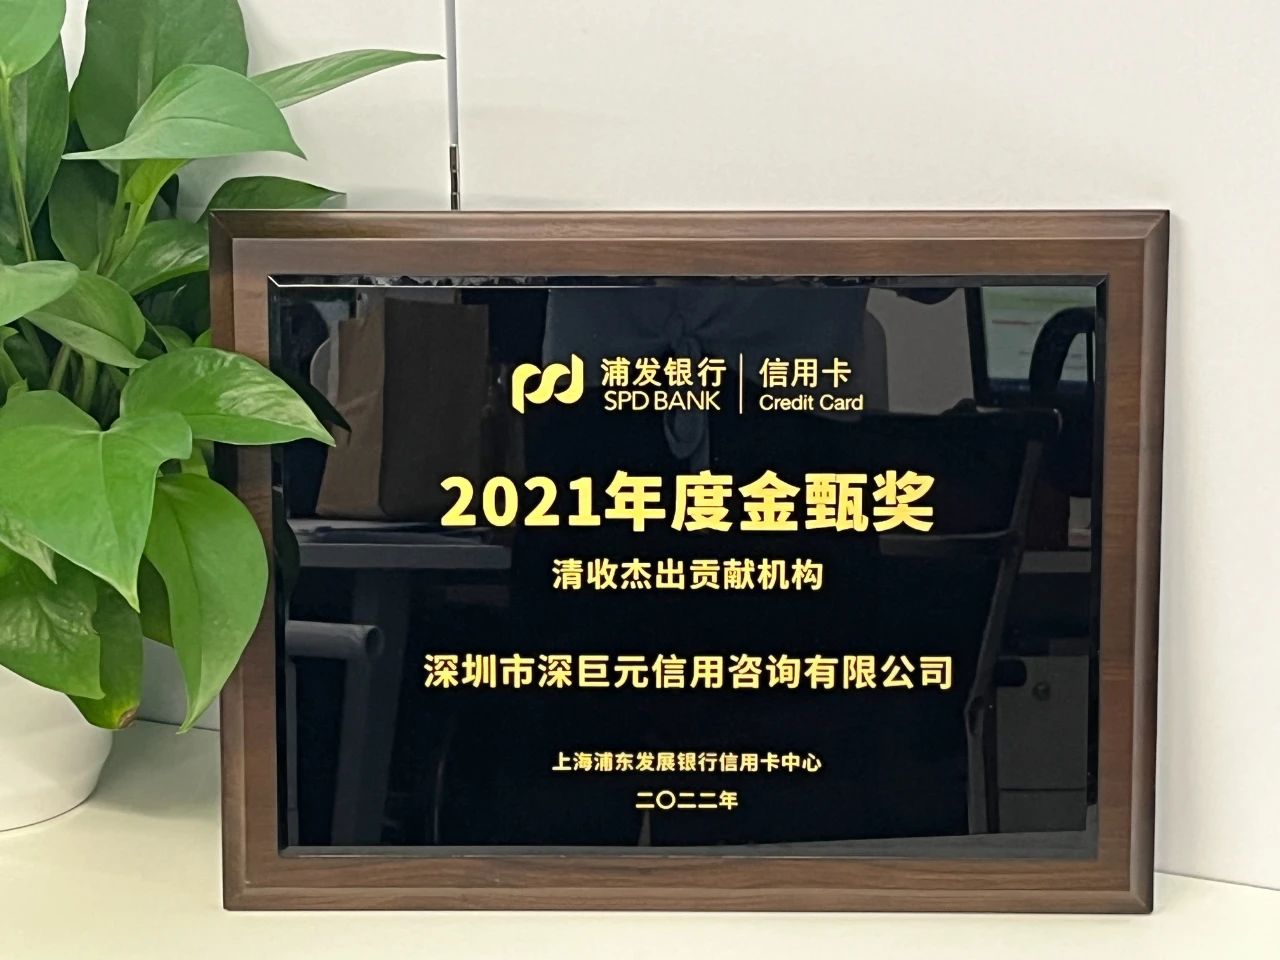 【喜报】我司荣获浦发银行2021/2022年度多个奖项